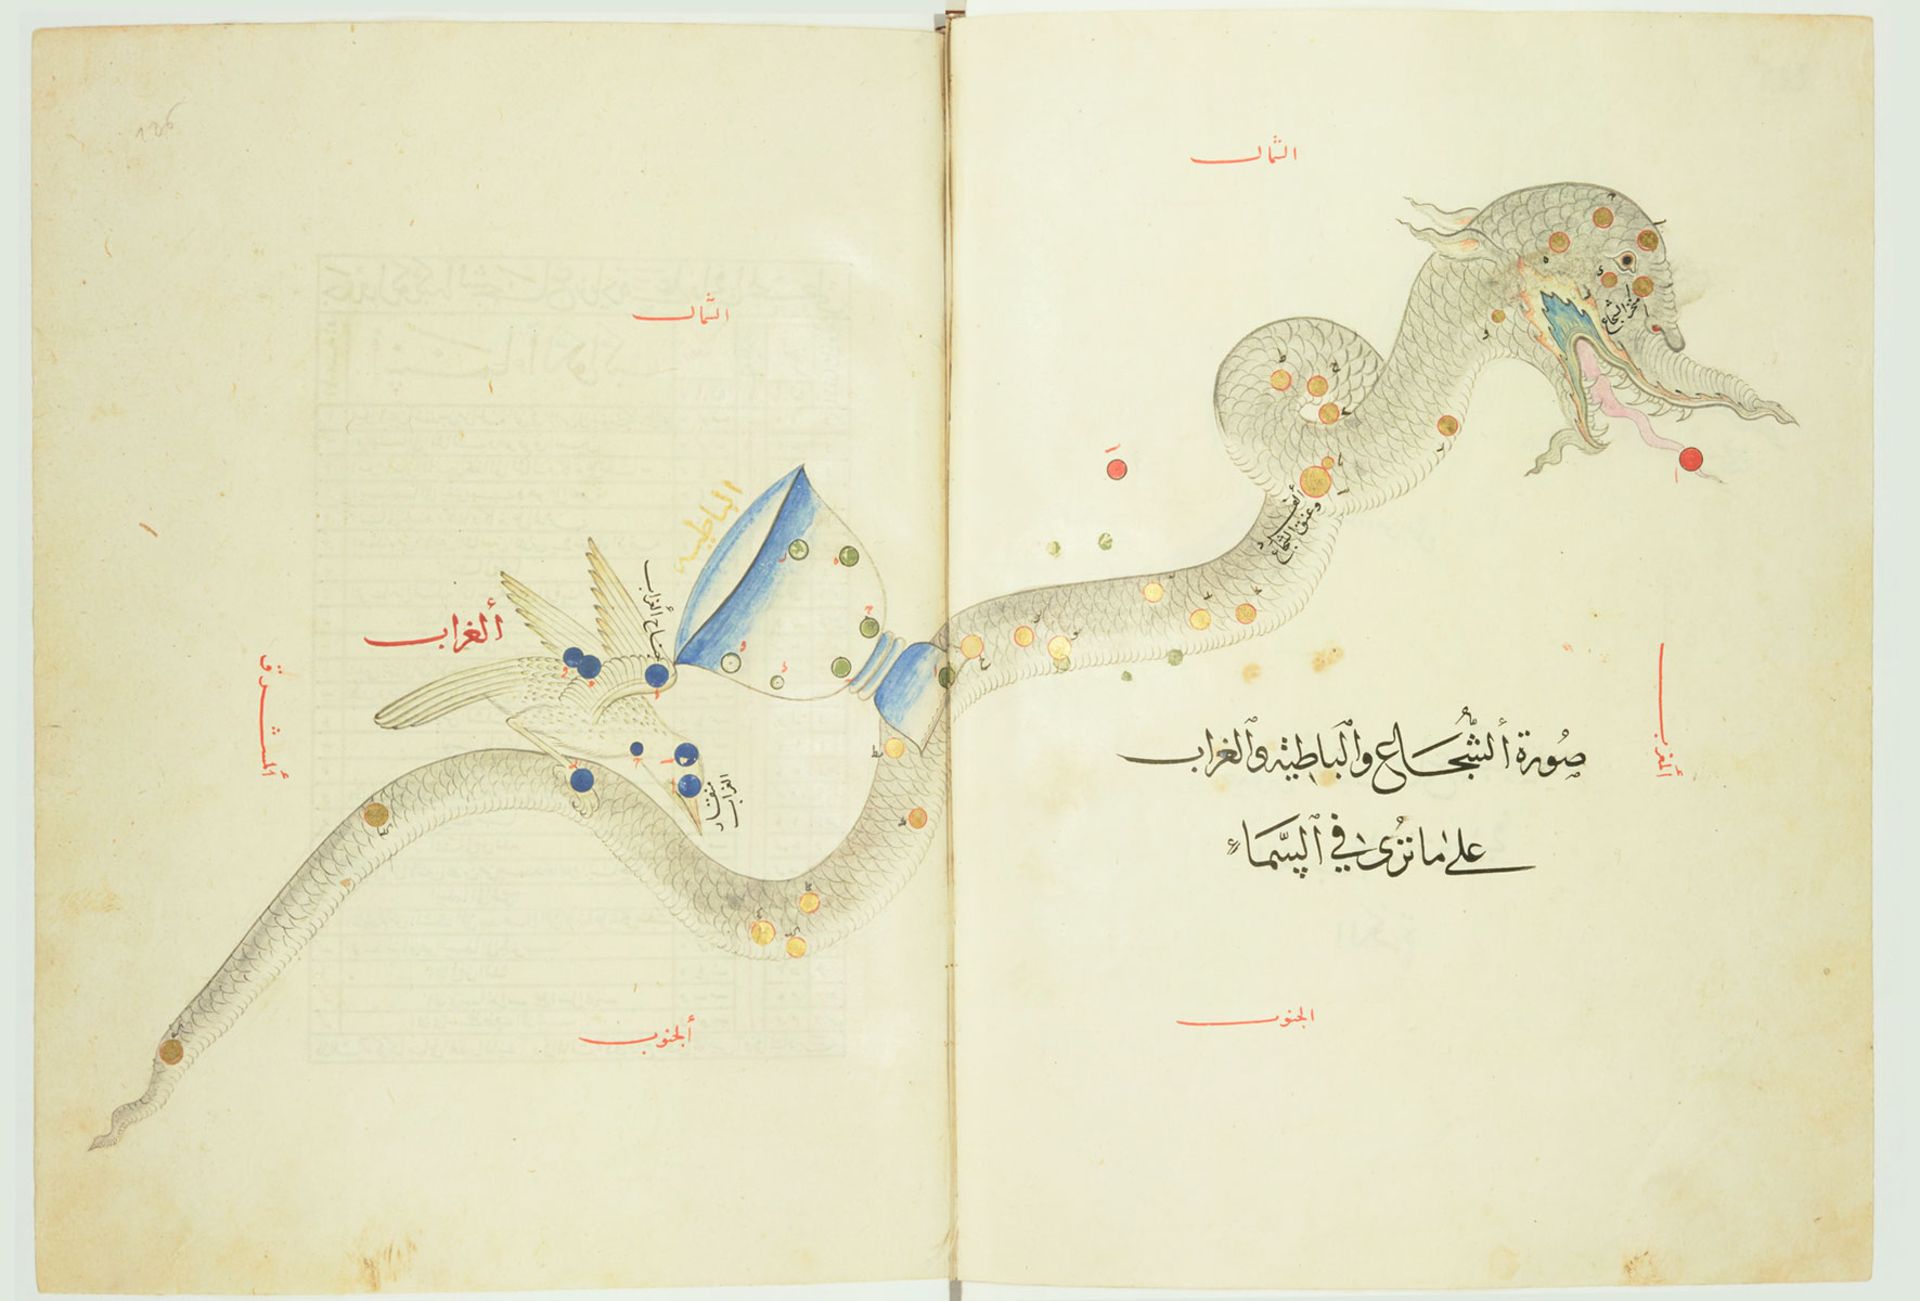 نقاشی صورت فلکی شجاع و کلاغ و جام صوفی الغ بیگ